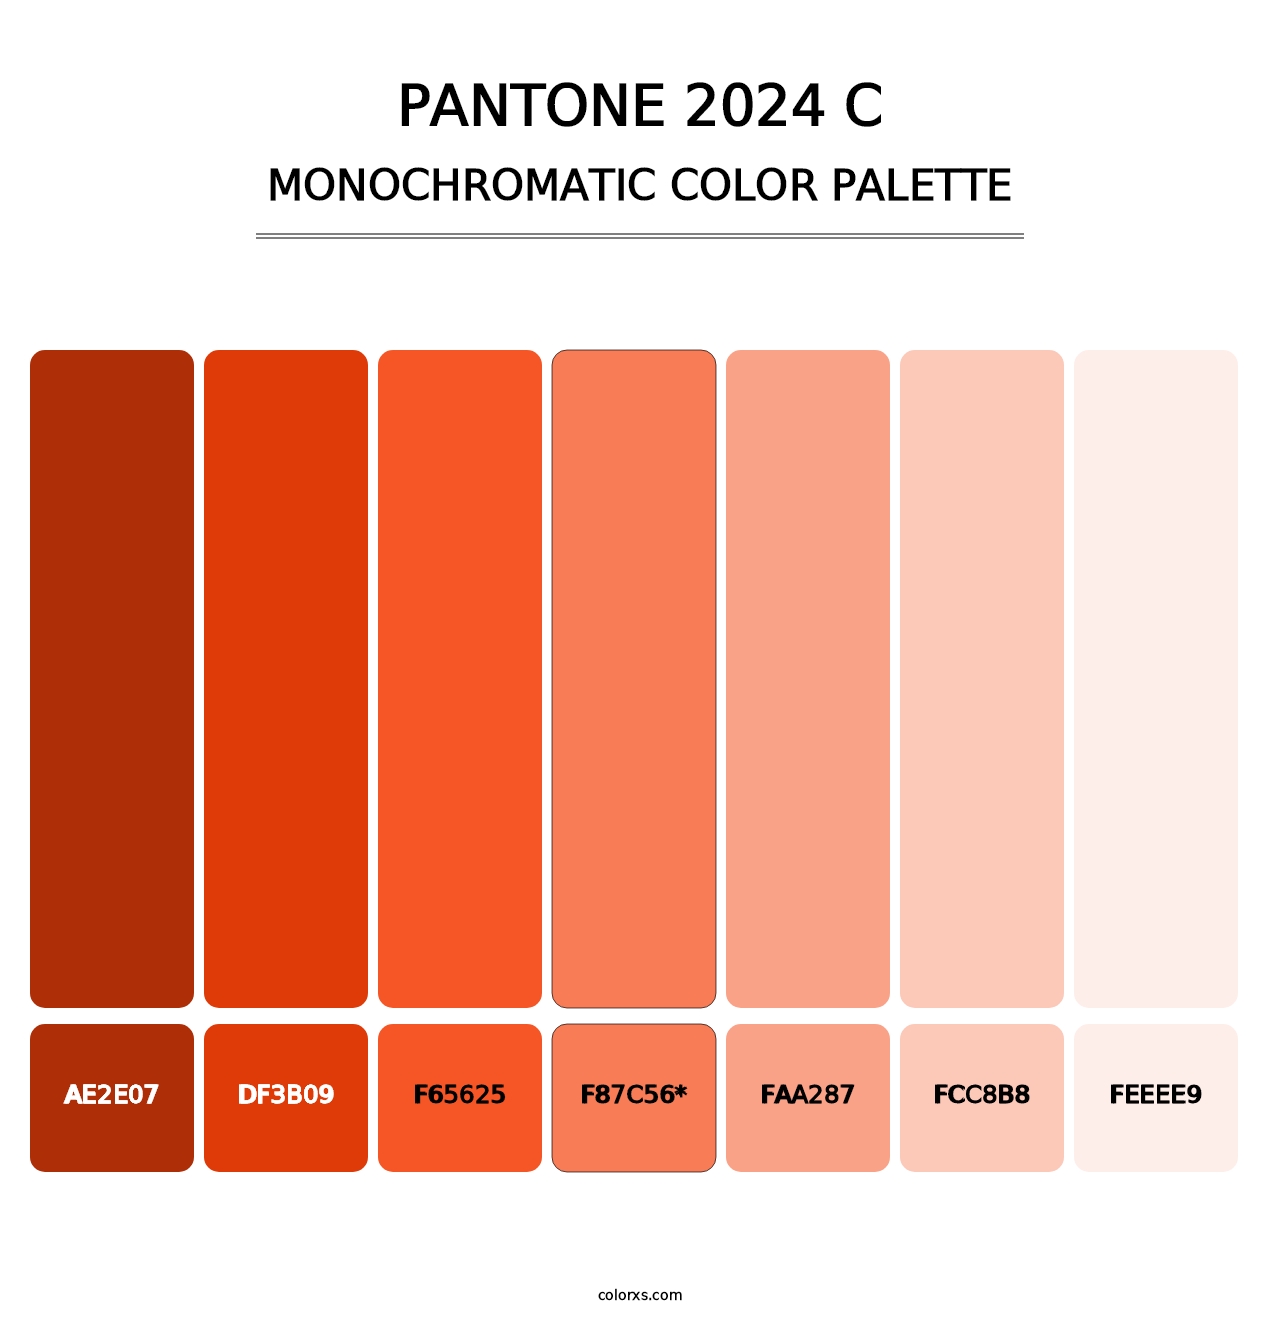 PANTONE 2024 C - Monochromatic Color Palette